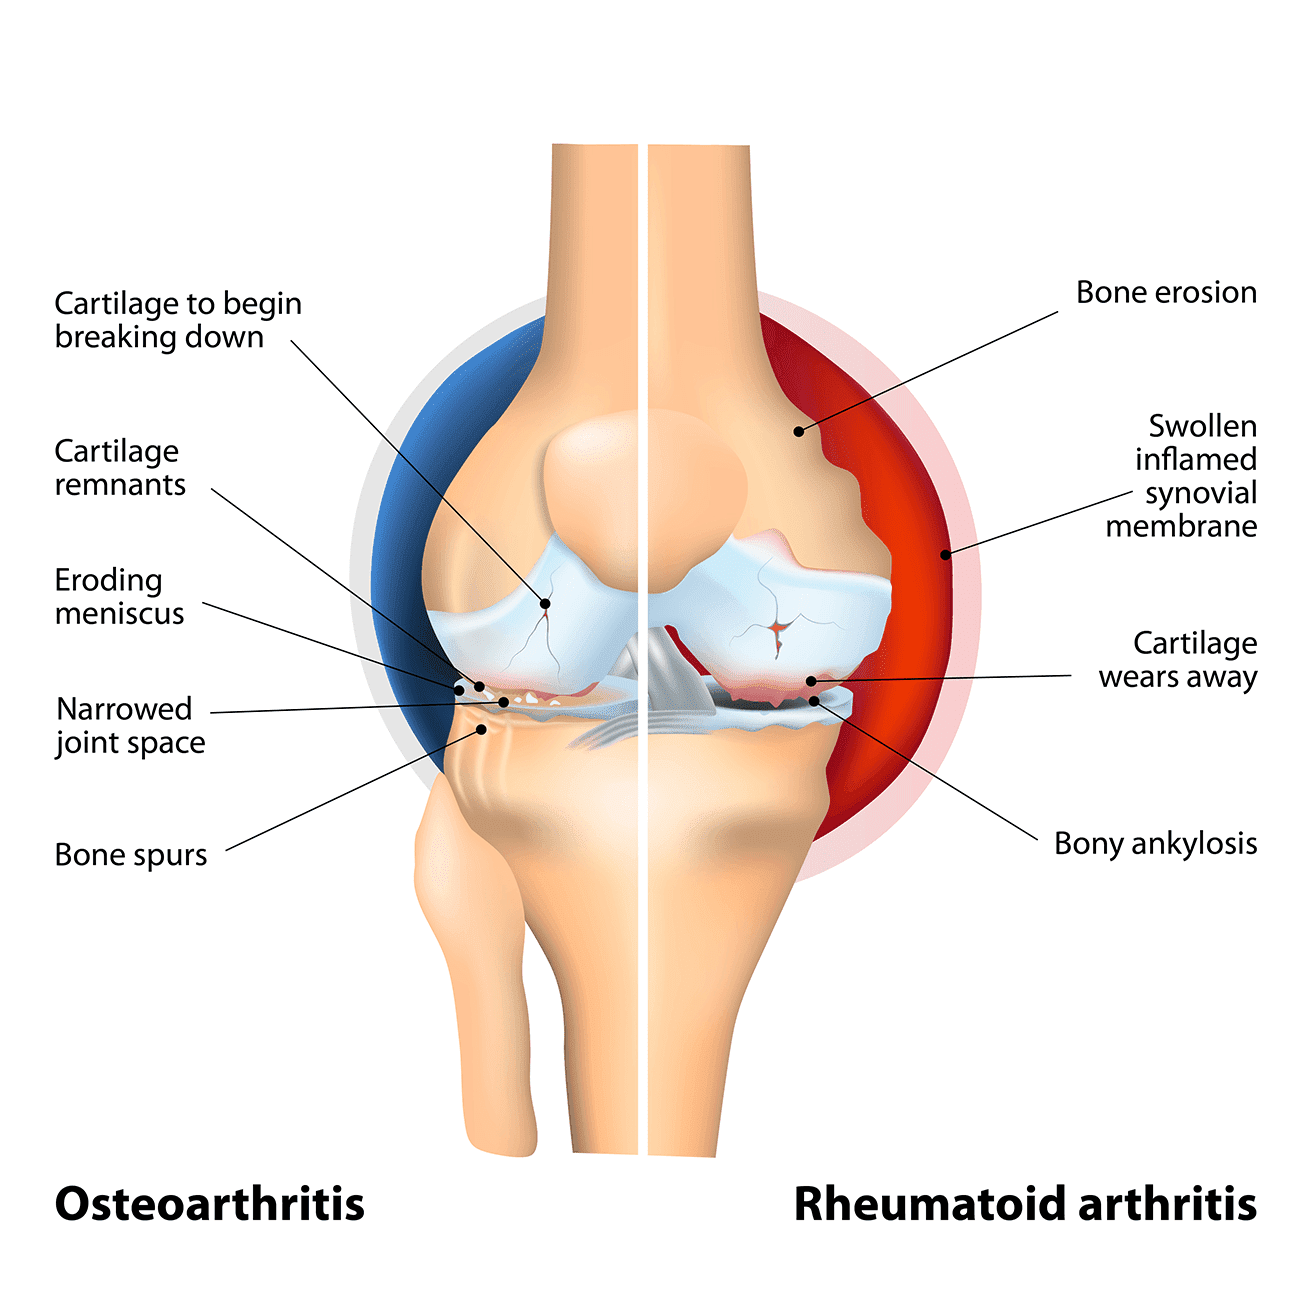 Is Rheumatoid Arthritis More Painful Than Osteoarthritis